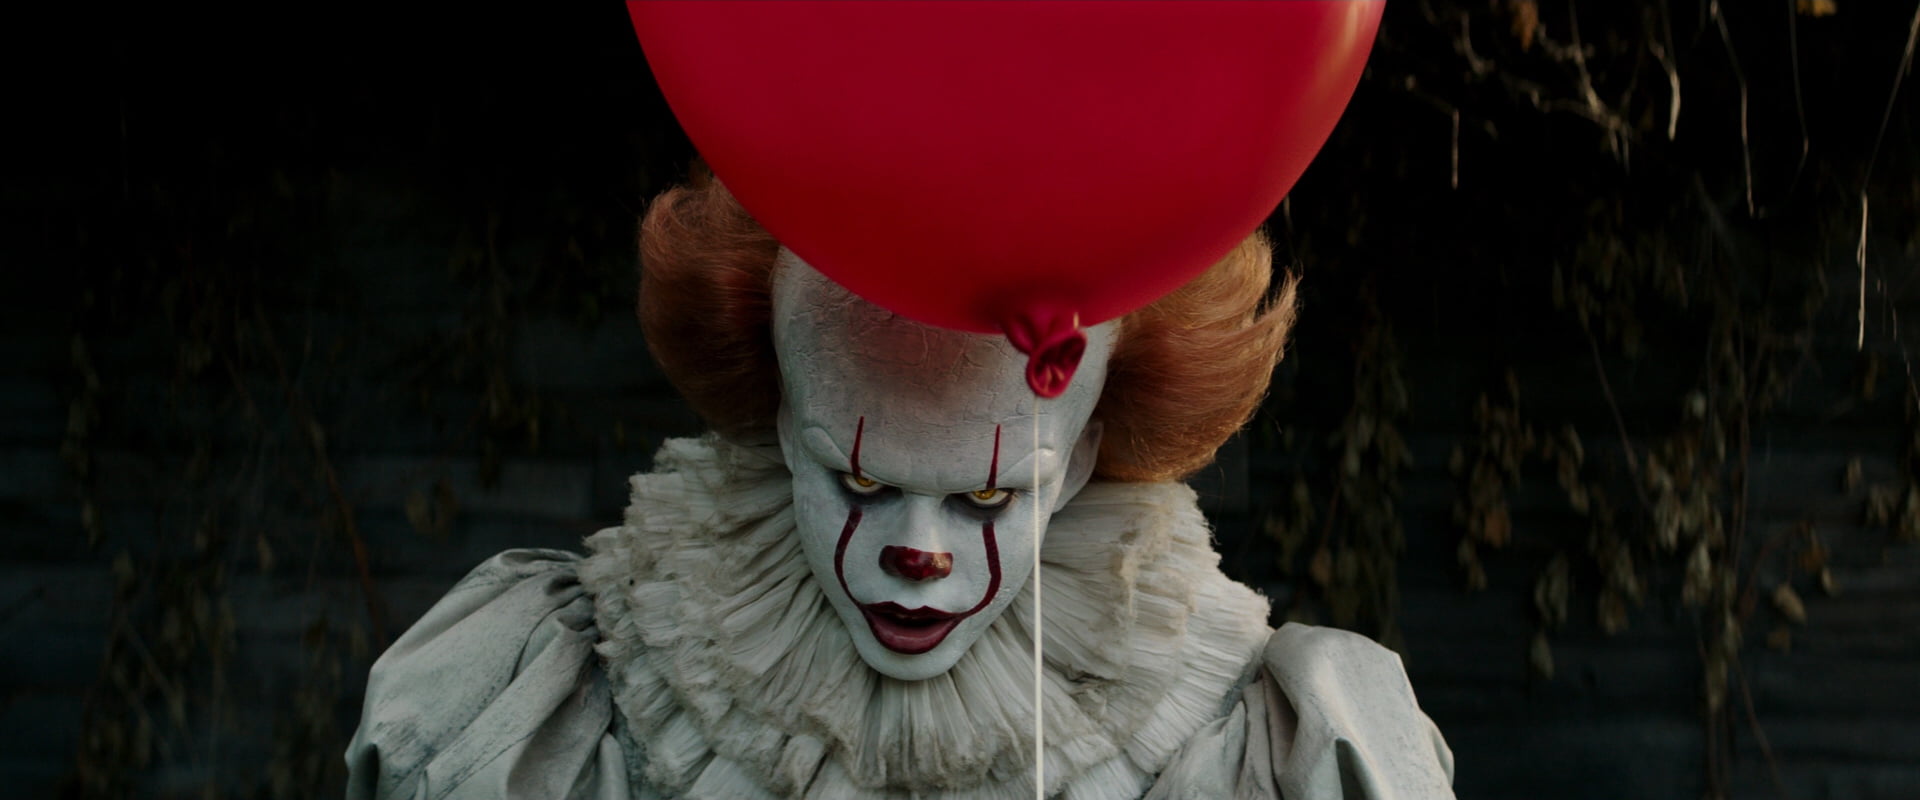 It (movie), pennywise, clown, horror, balloon, film stills